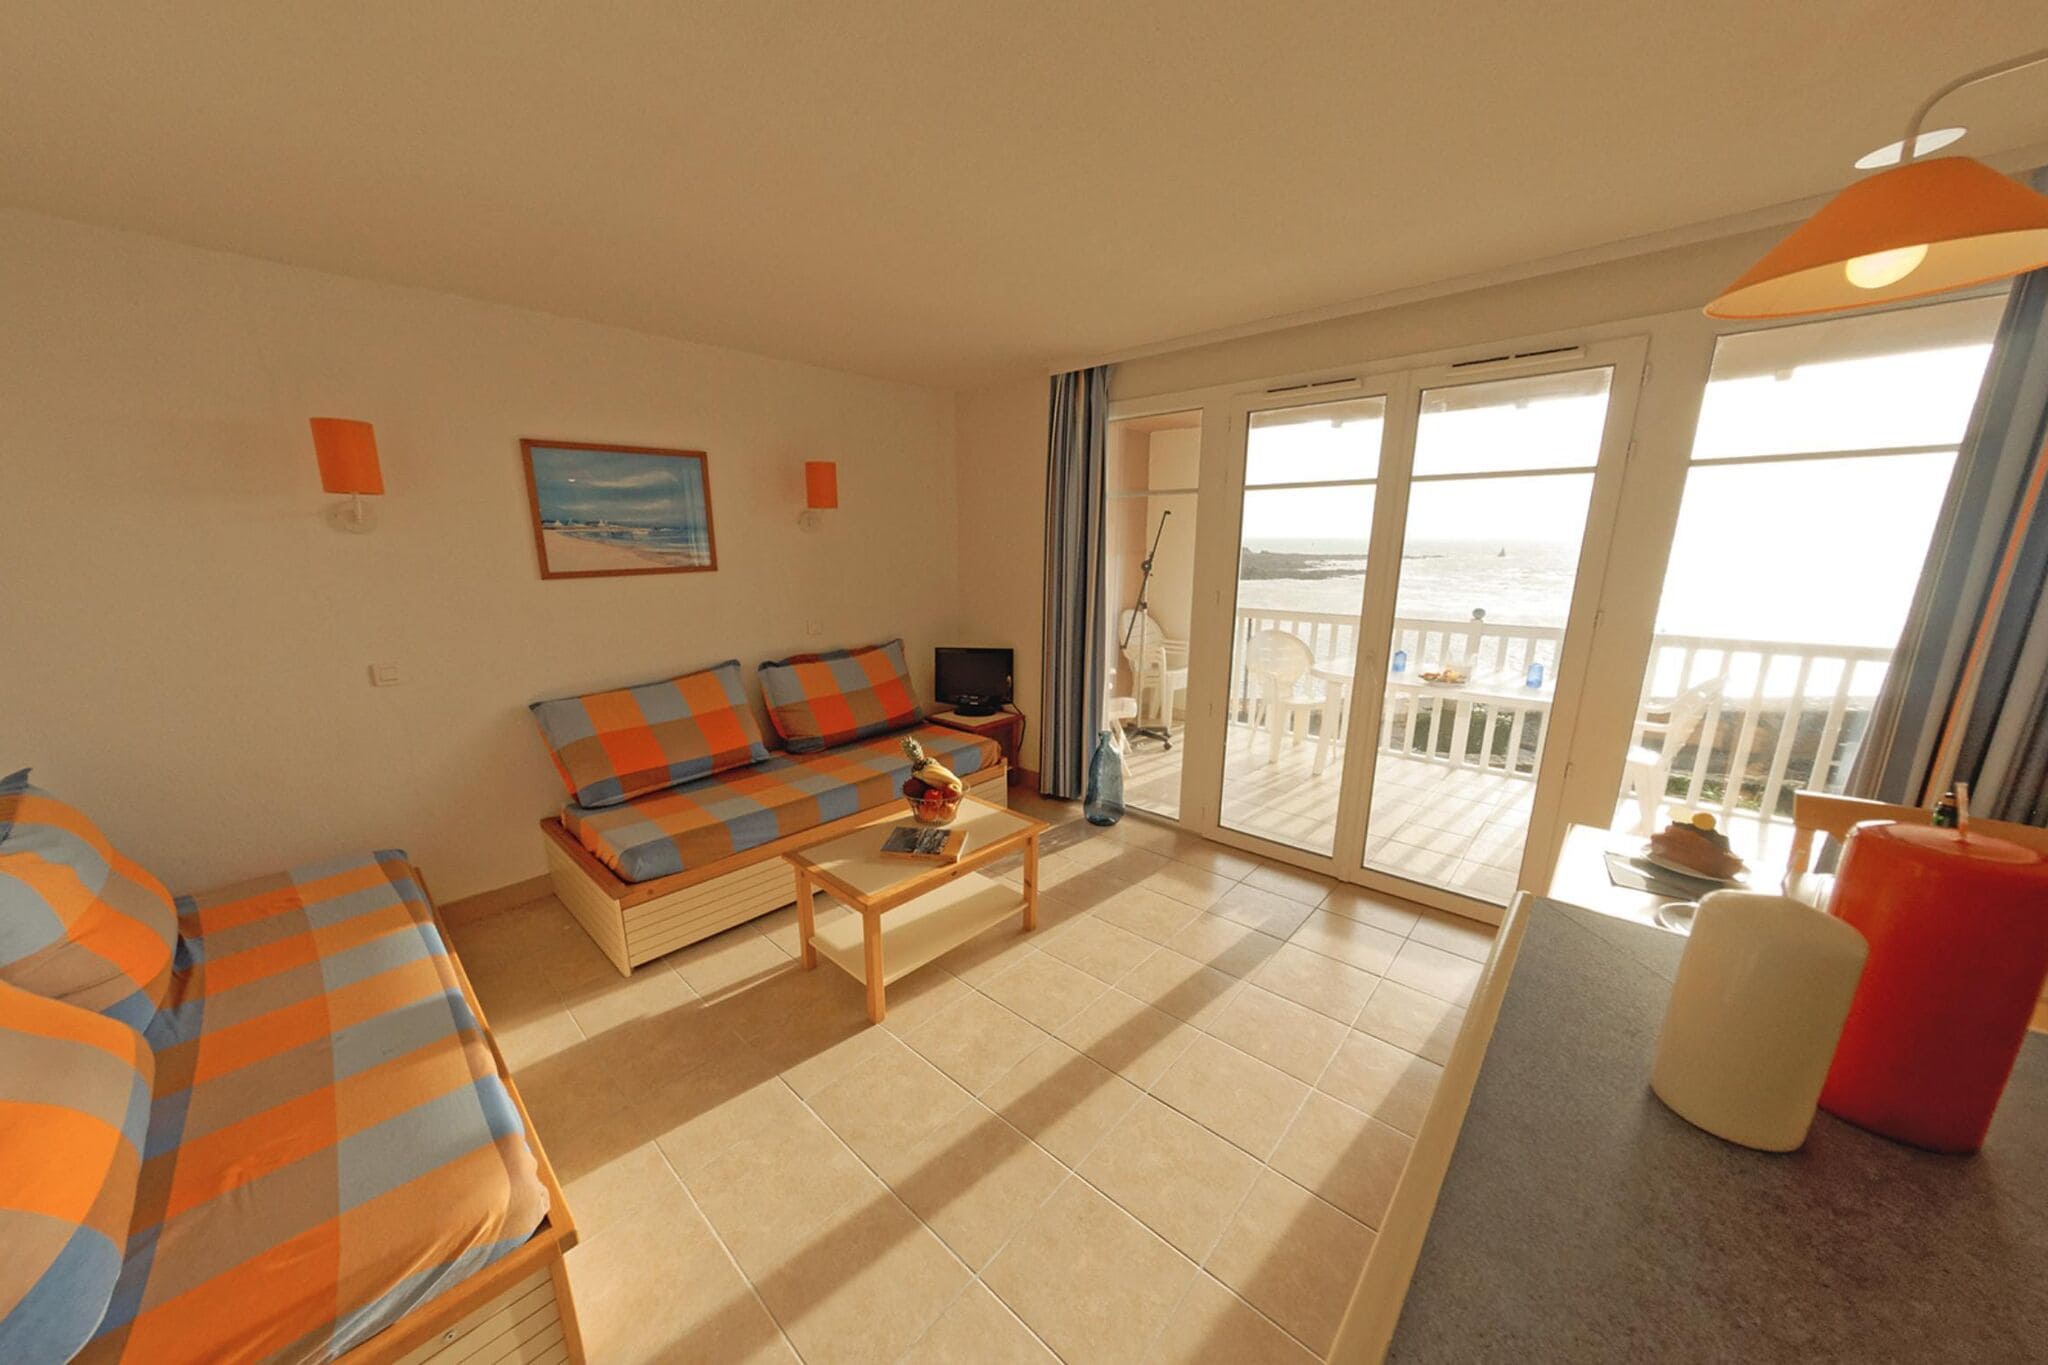 Appartement vlakbij het prachtige strand van Trescadec met zeezicht